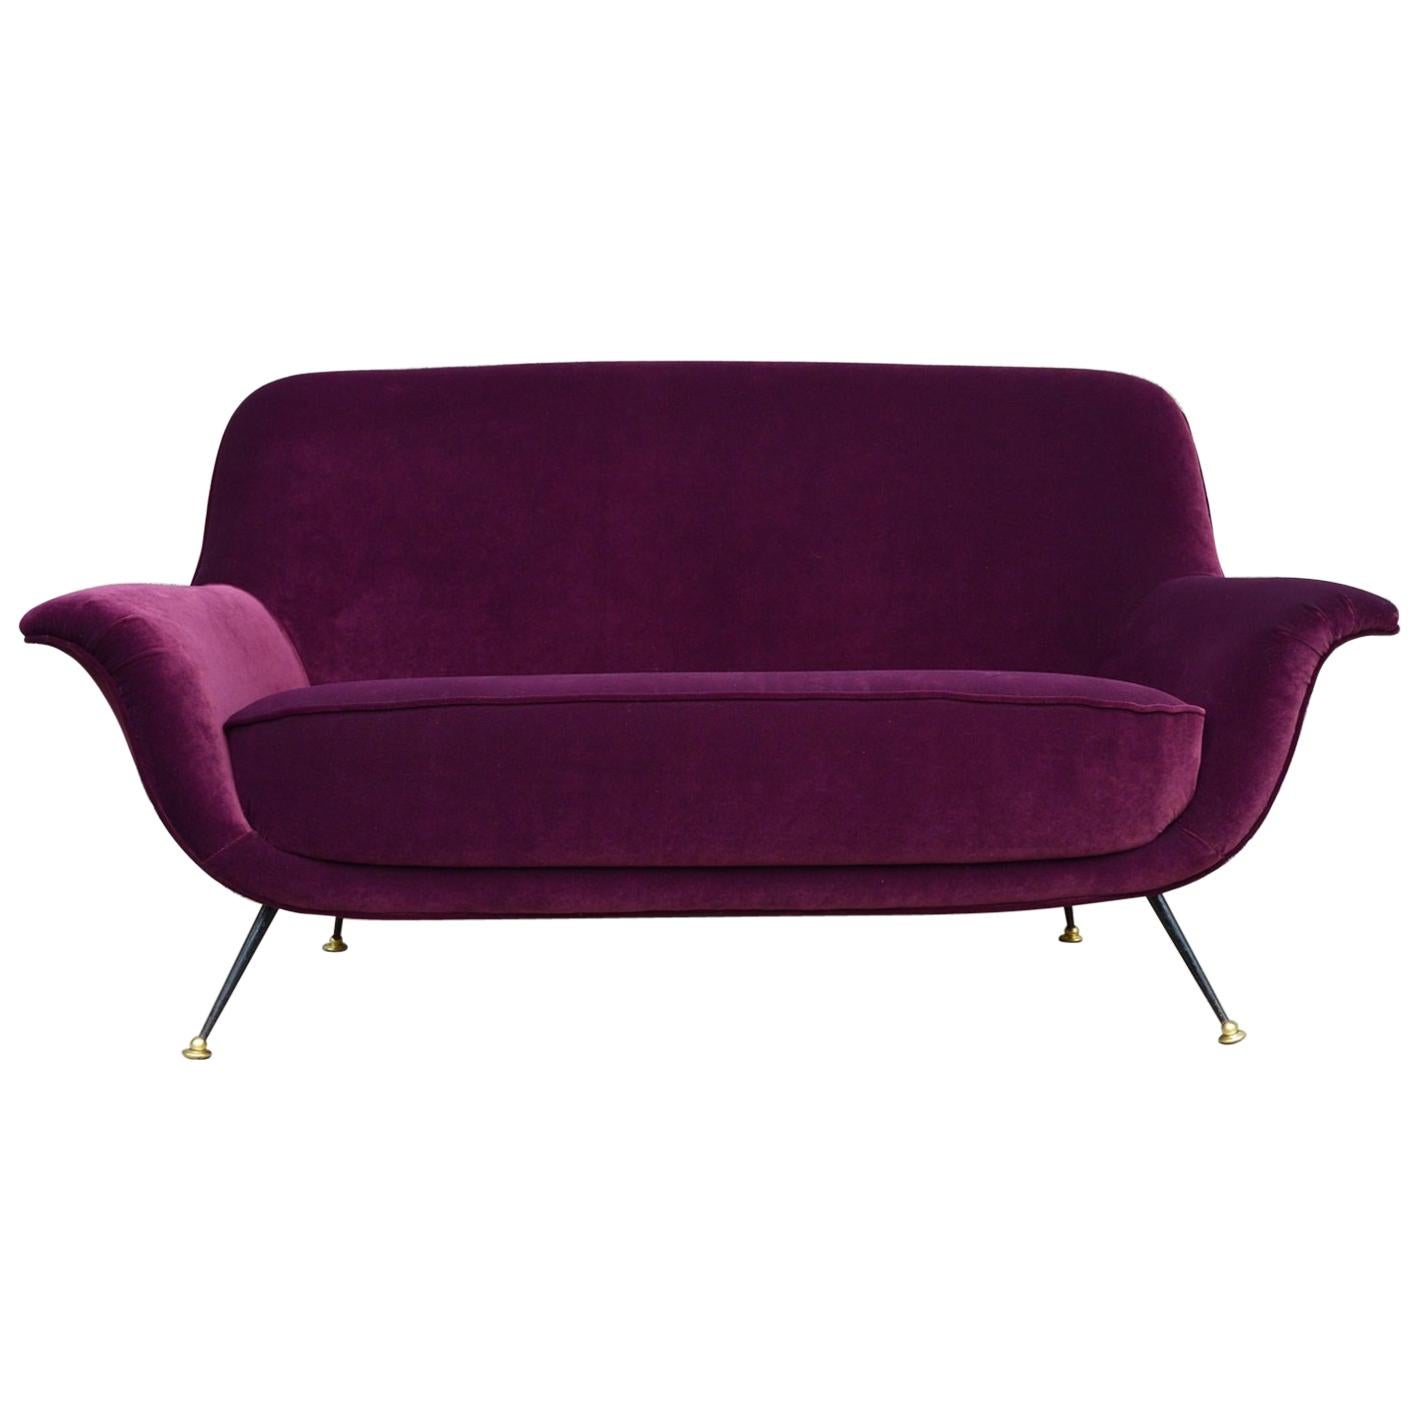 Italian Midcentury Sofa or Loveseat Reupholstered with Purple Velvet, 1950s